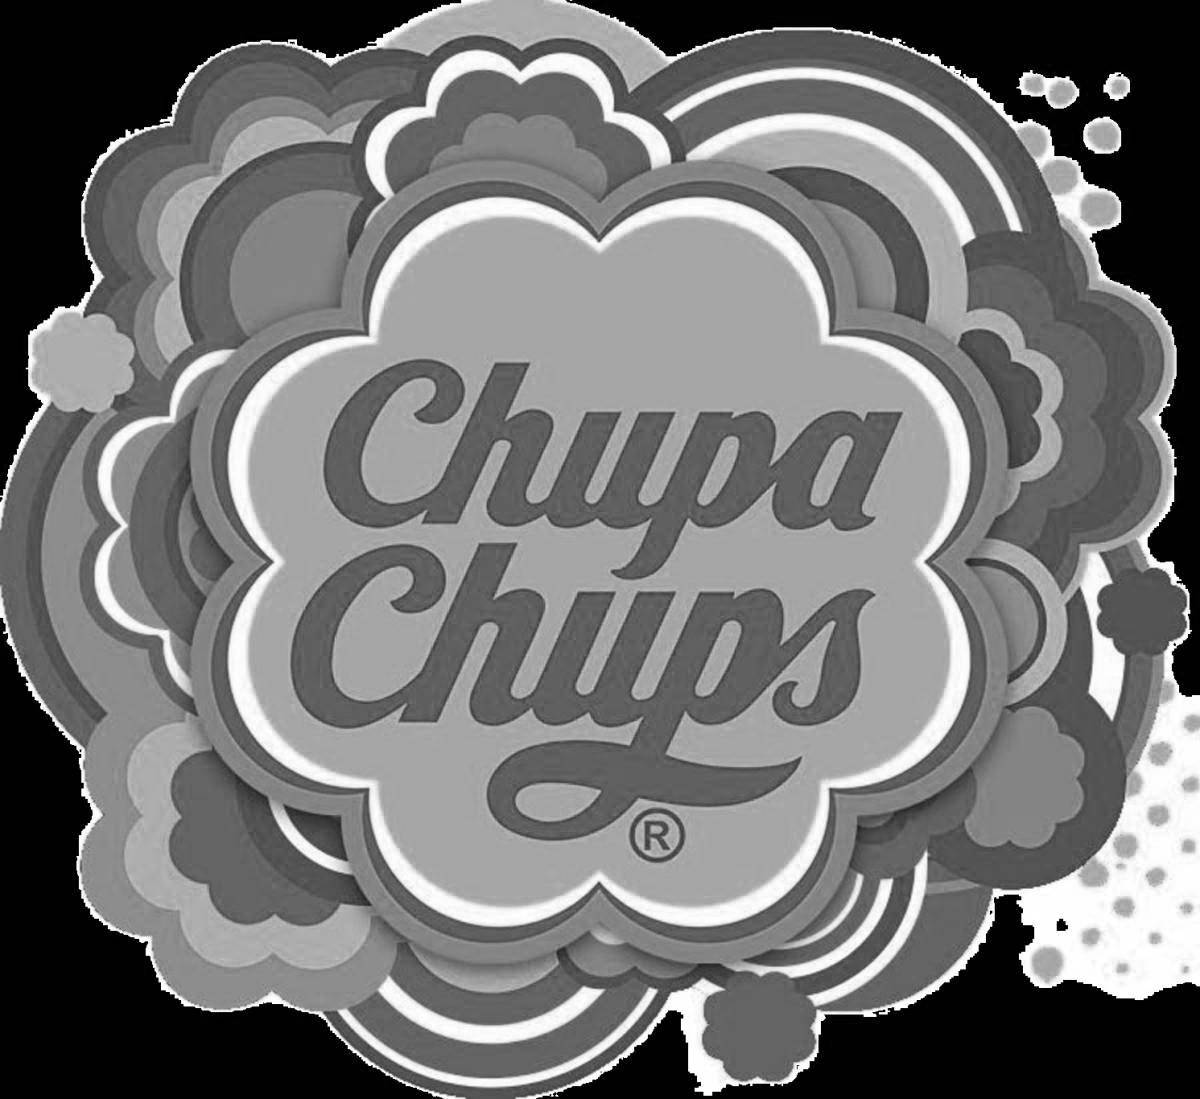 Chupa chups logo fun coloring